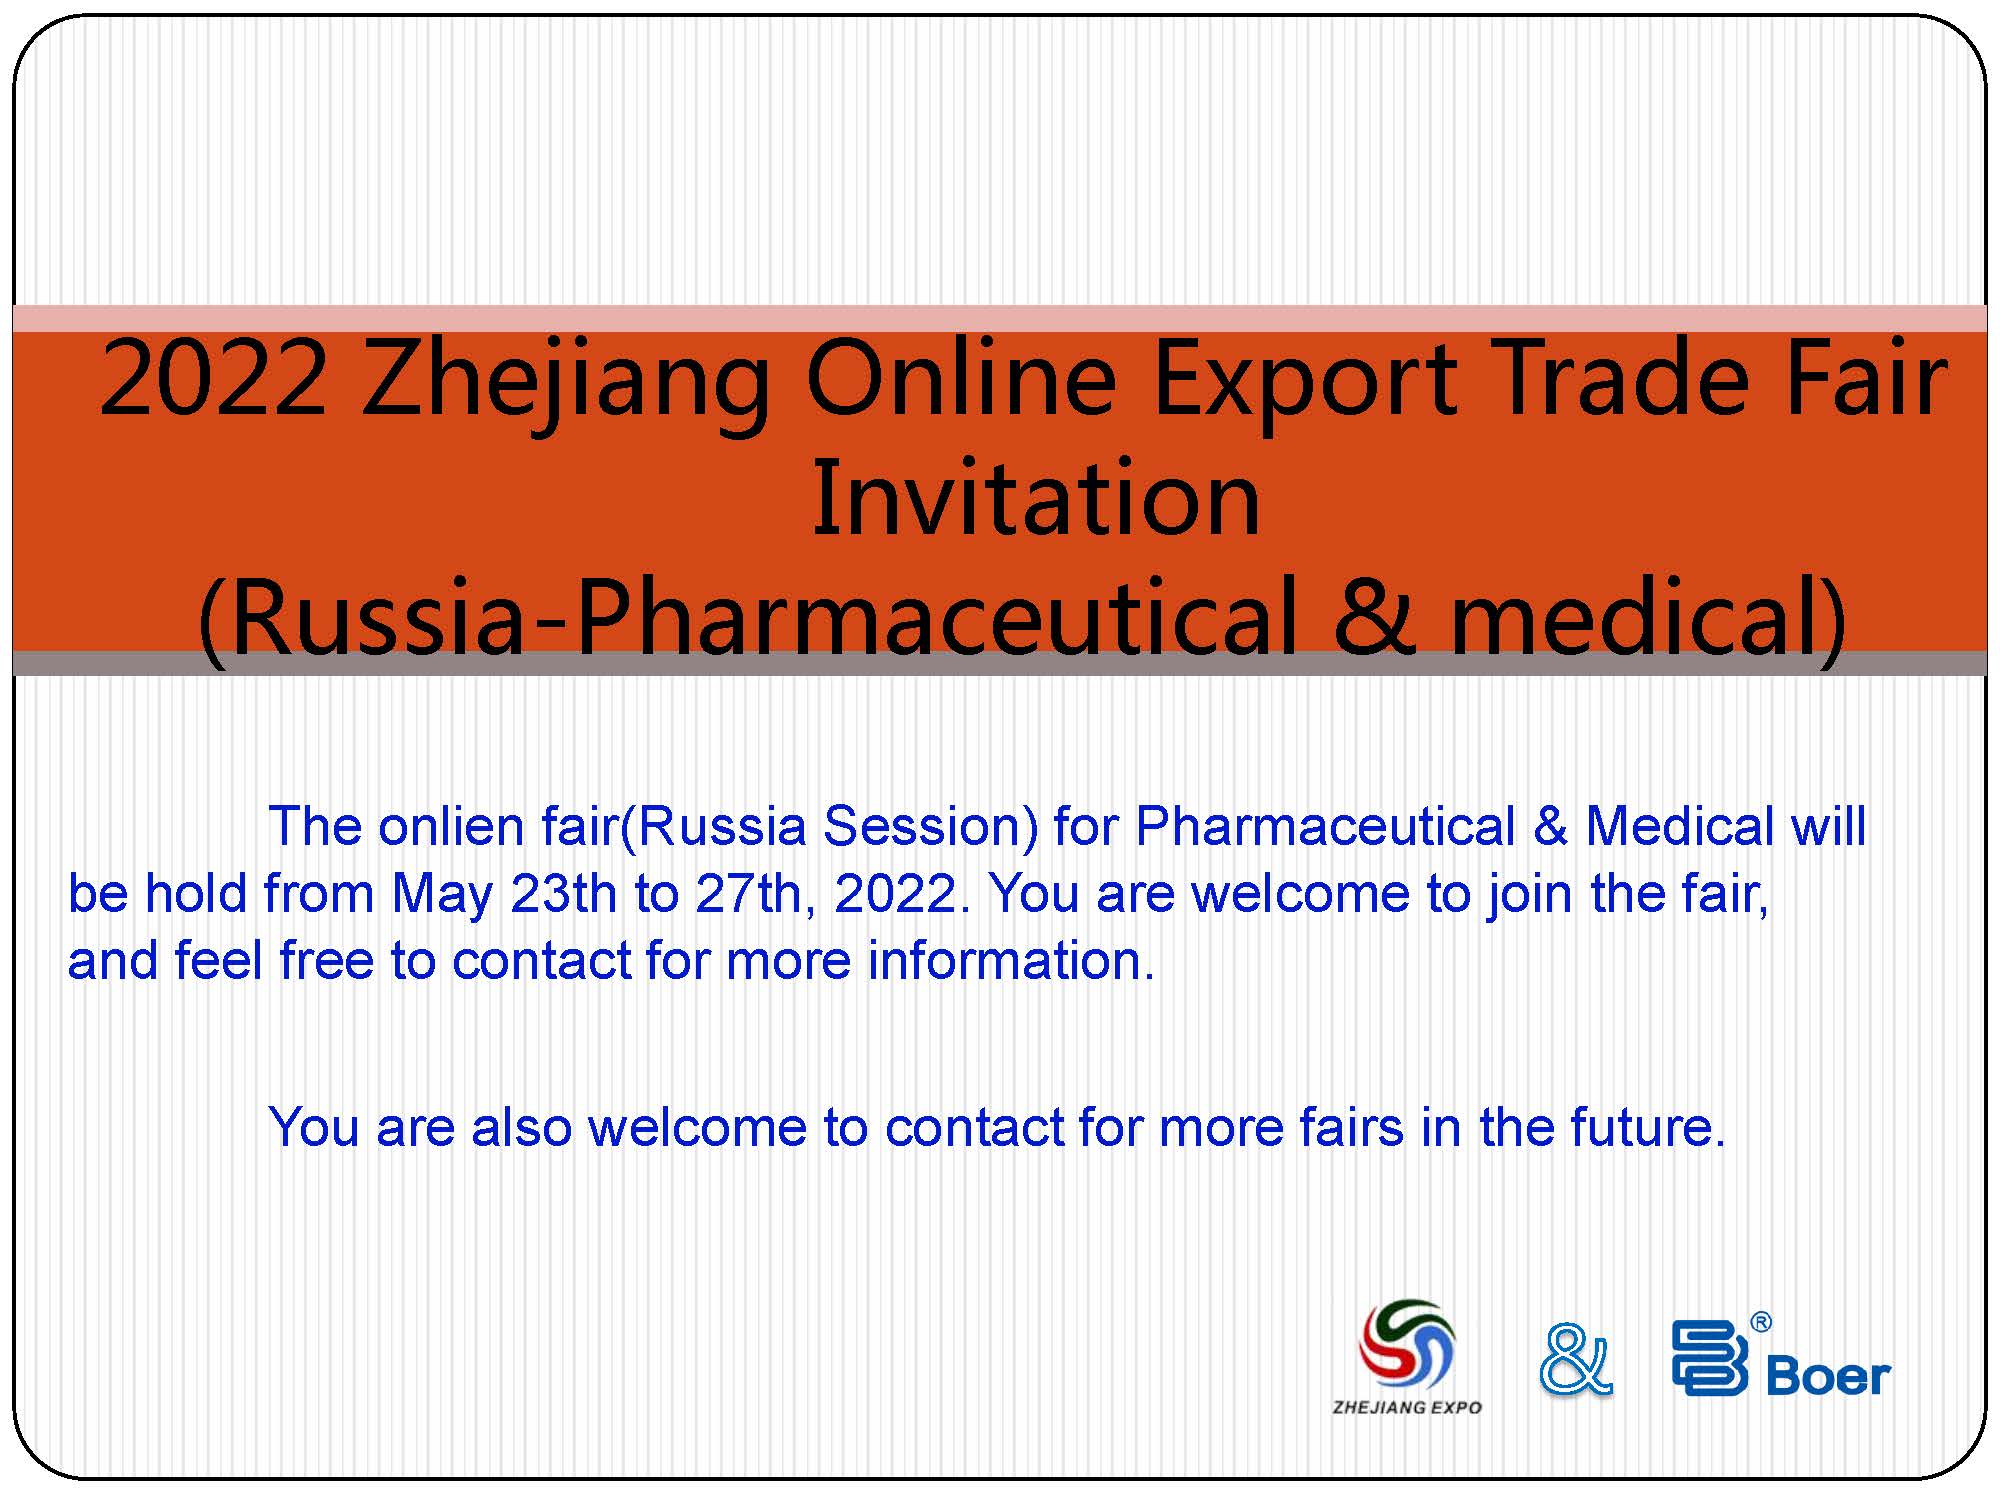 2022-zhejiang-online-export-trade-fair-invitation.jpg